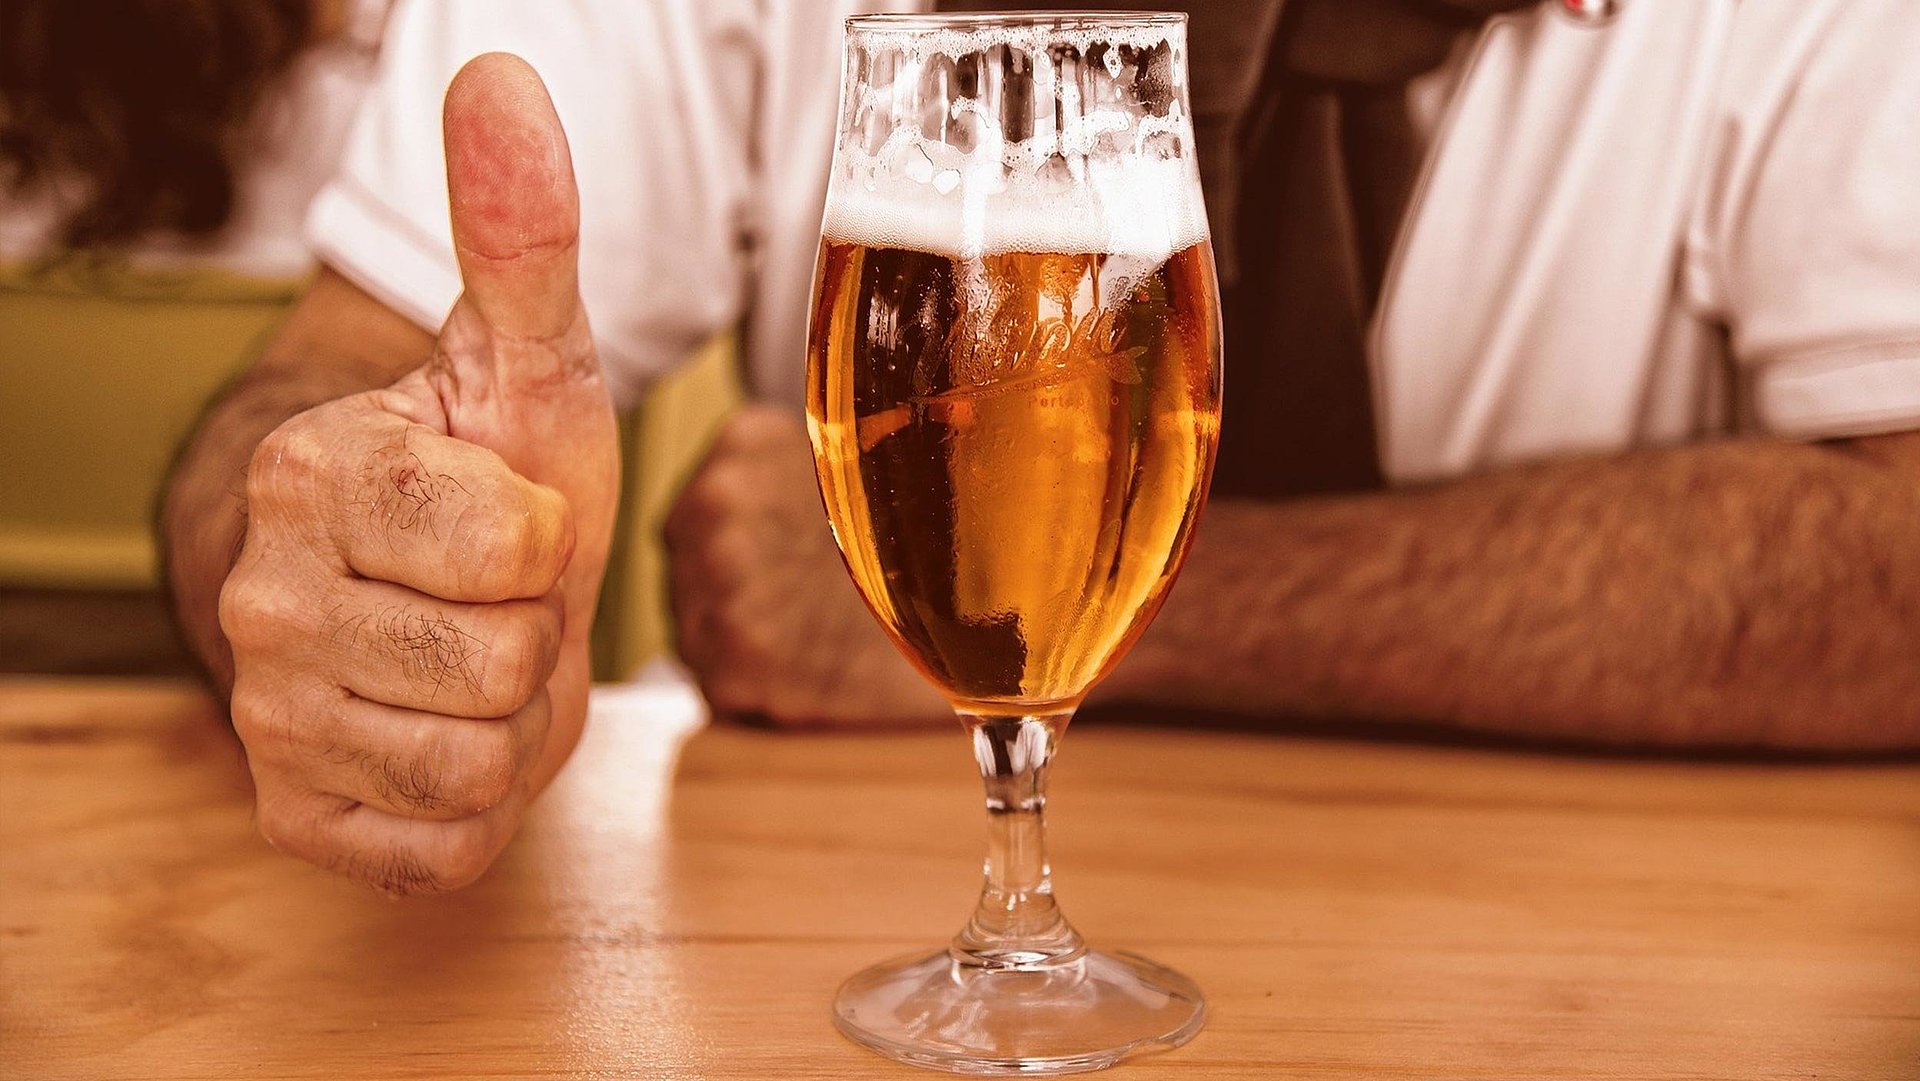 Biergarten in Franken - fast volles Bier auf Holztisch; Mann im Hintergrund zeigt Daumen Hoch